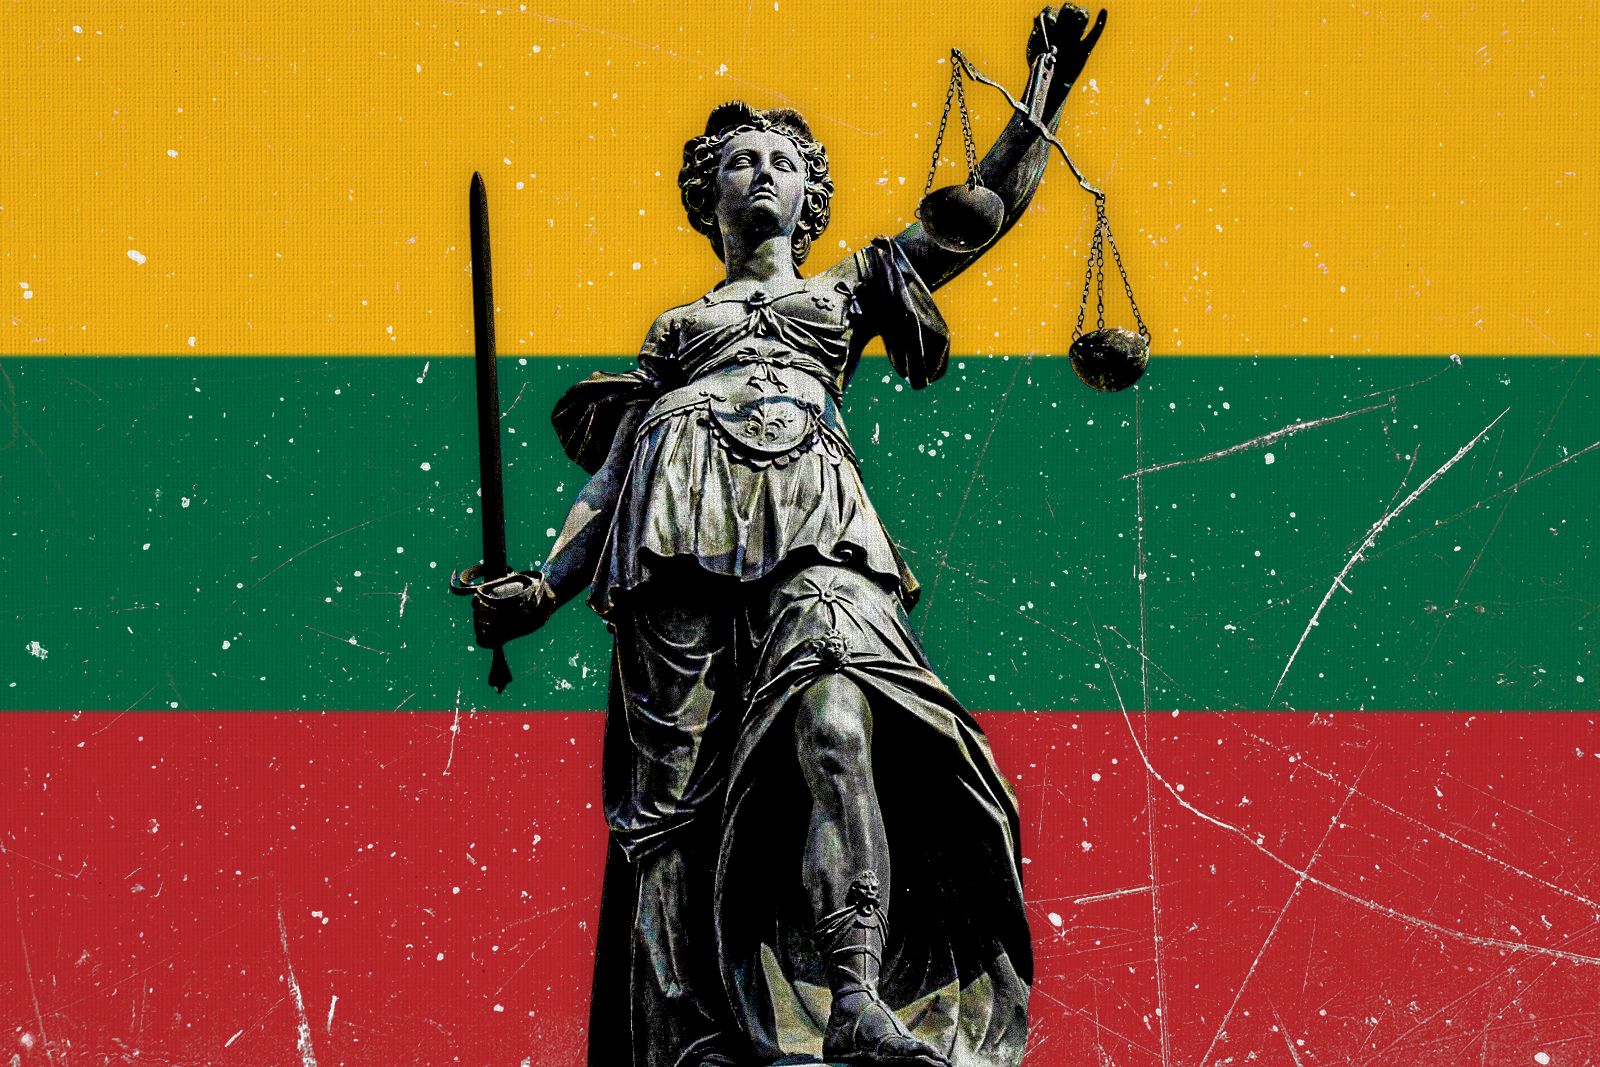 Teisinė korupcija išbando Lietuvos įsipareigojimą laikytis teisinės valstybės